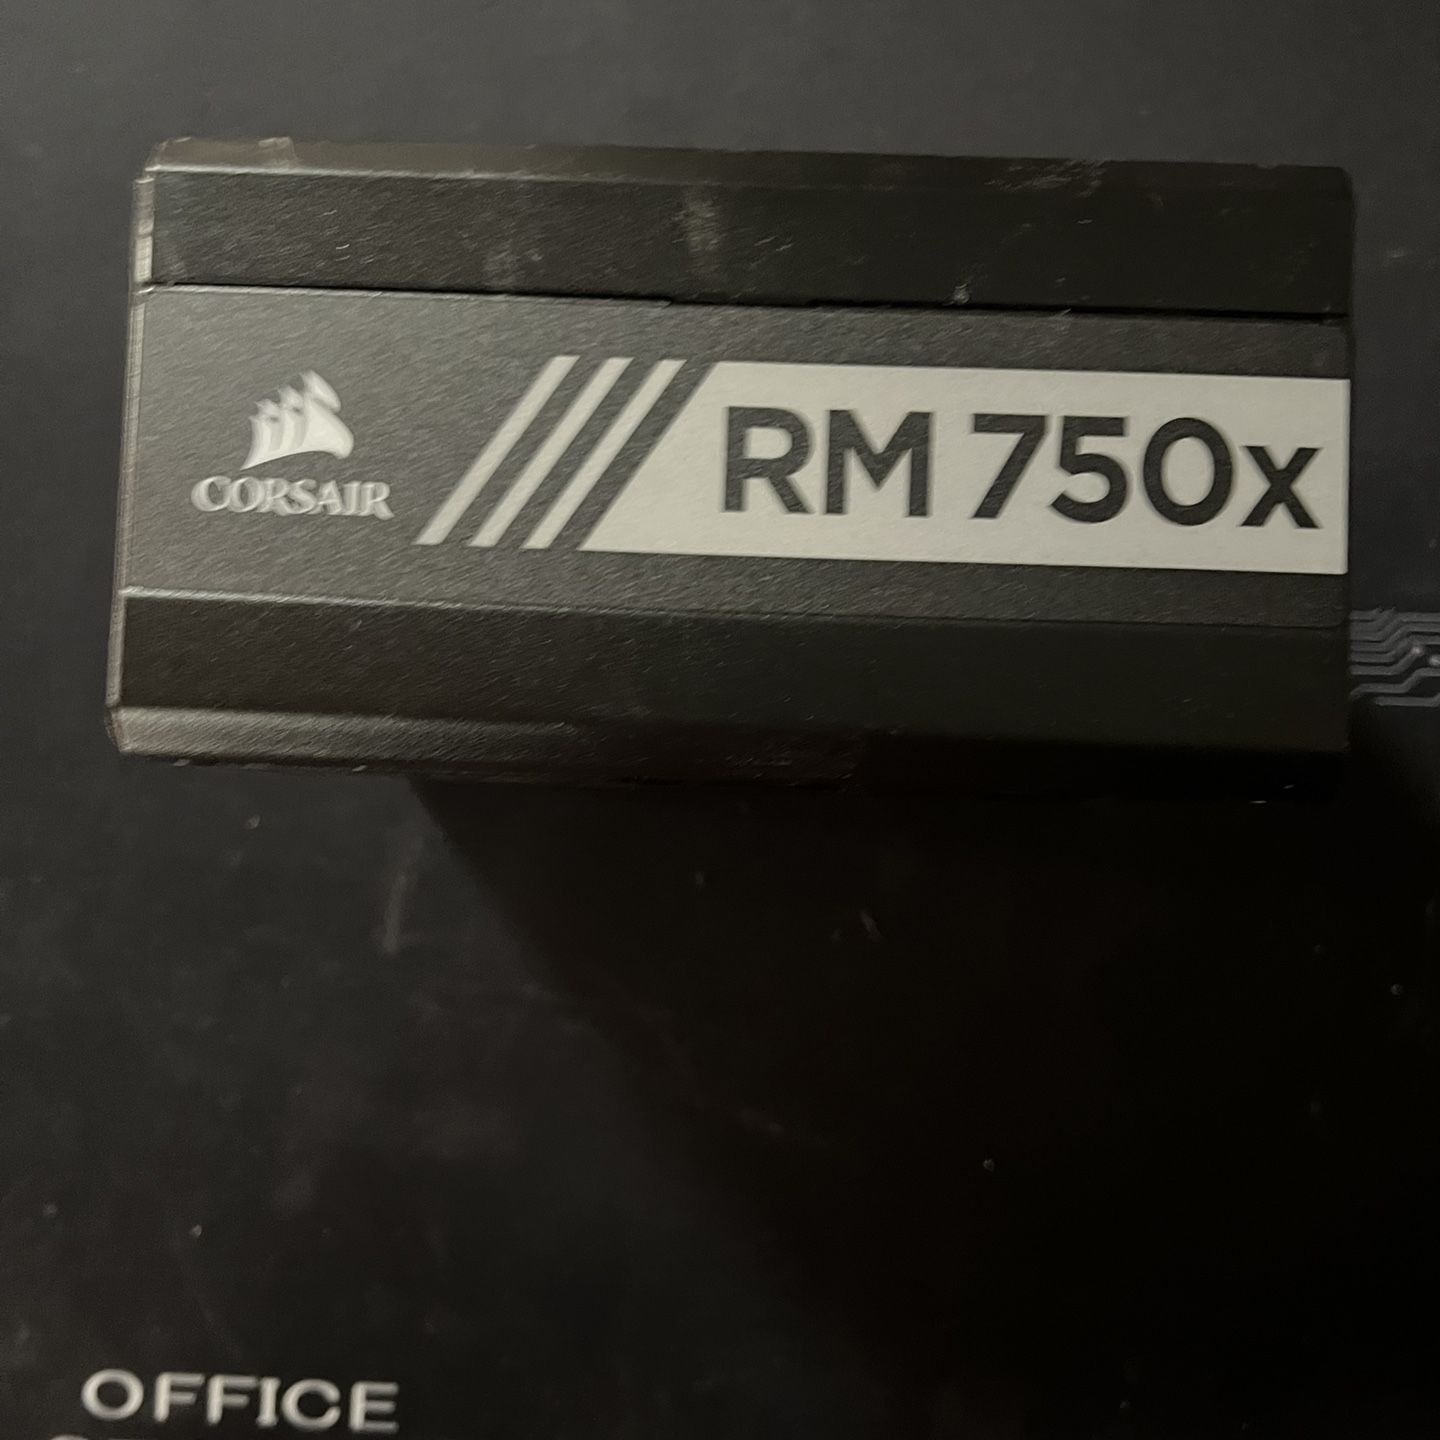 Corsair RMX Series, RM 750x